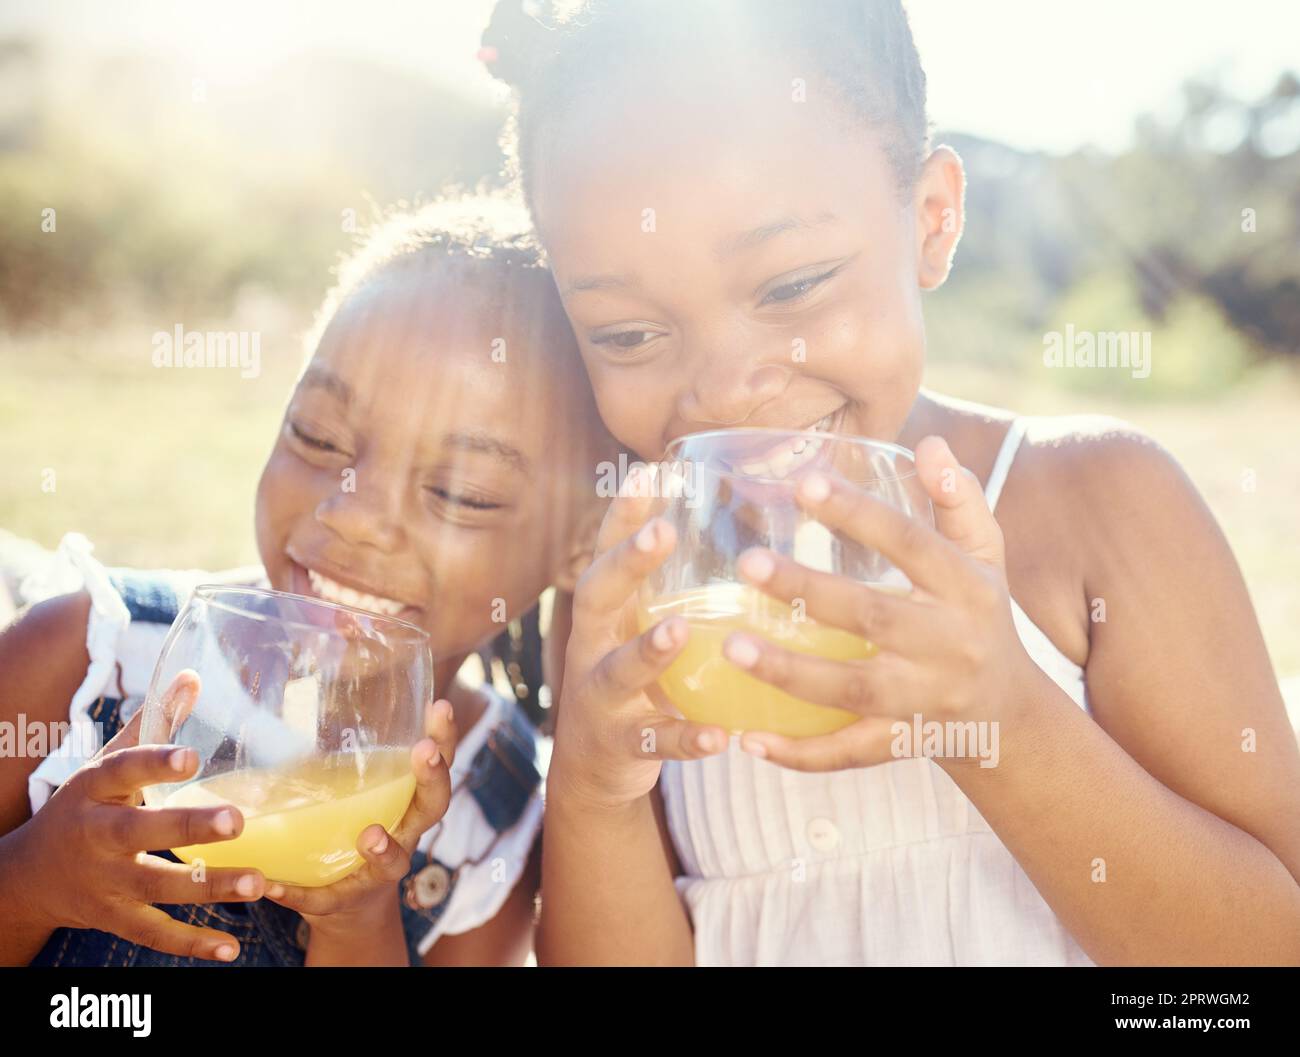 Saft, Kinder und glückliche Geschwister auf einem Picknick in fröhlicher Pflege und ein Lächeln in der Natur im Urlaub. Schwarze Kinder in gesunder Lebensweise mit Lächeln, die Vitamin C-Früchte im Freien trinken Stockfoto